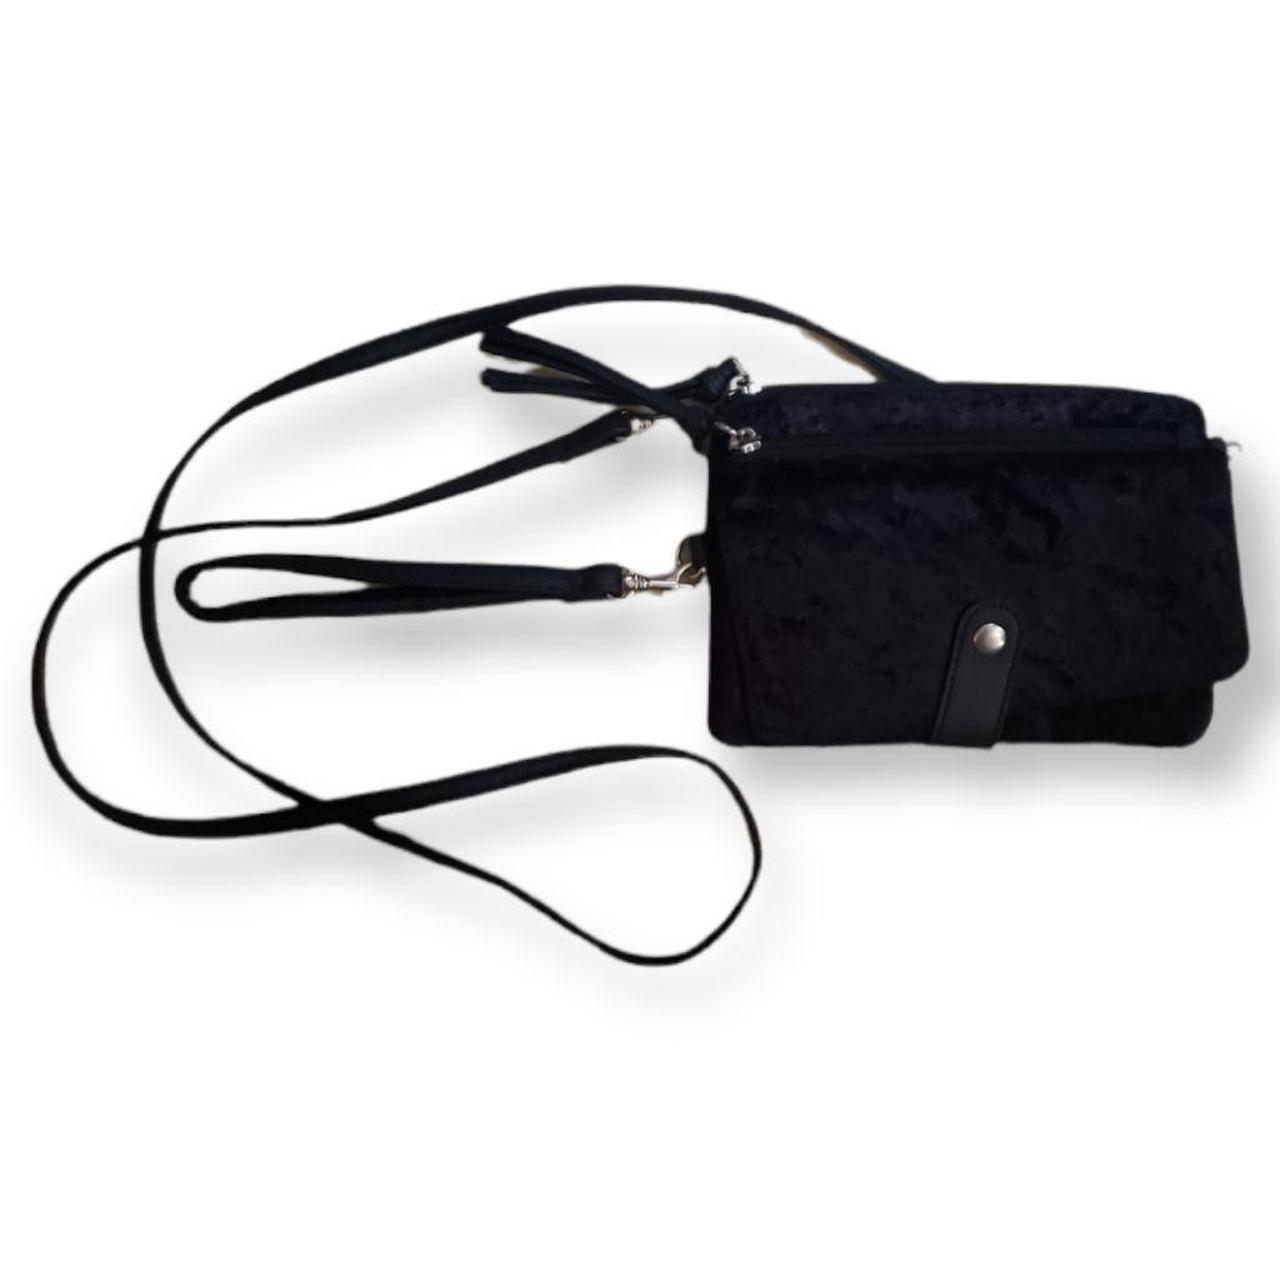 Product Image 1 - Black velvet crossbody or wristlet